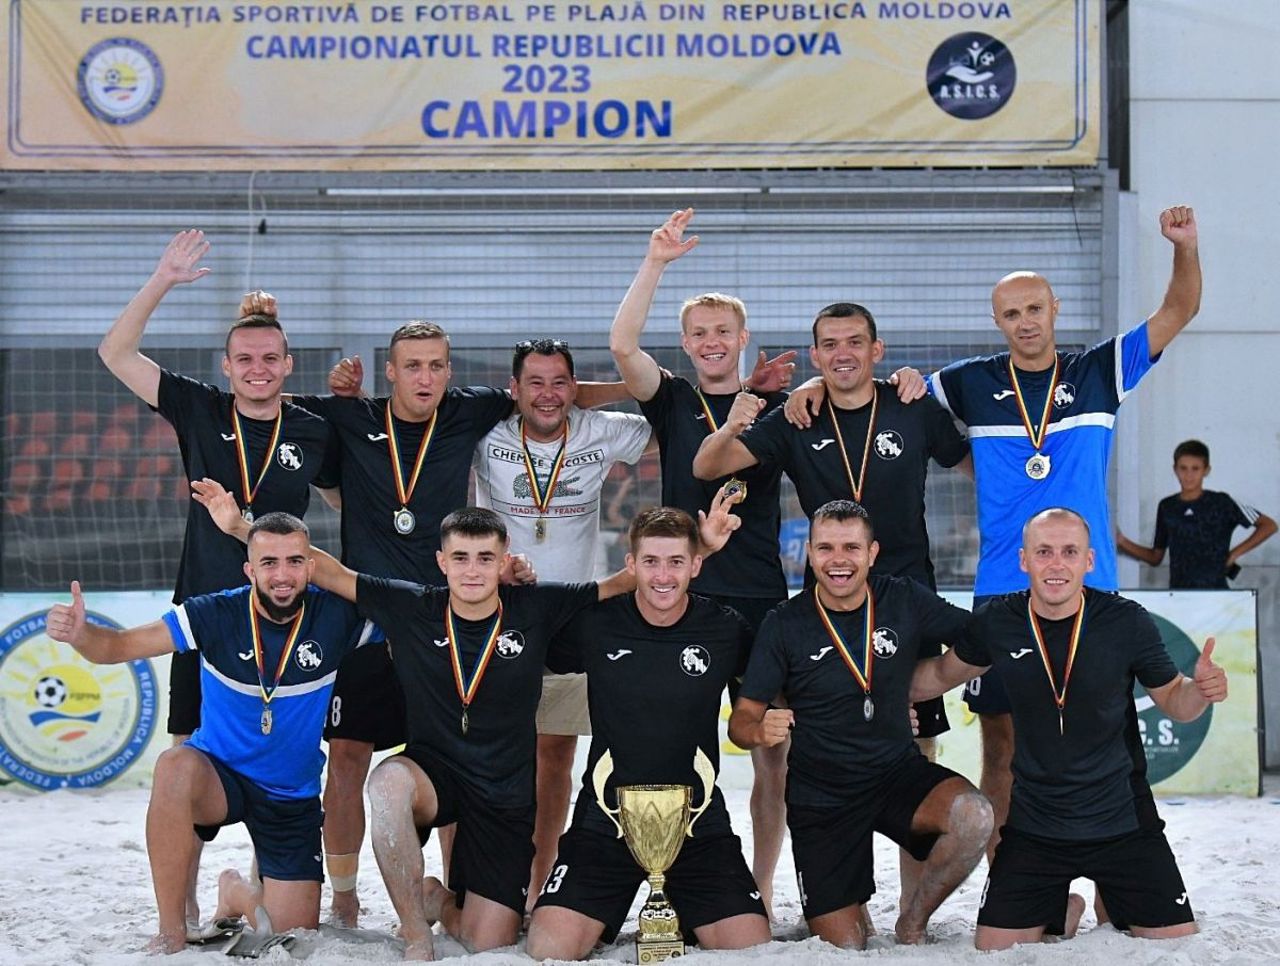 Federația Sportivă de Fotbal pe Plajă din Republica Moldova